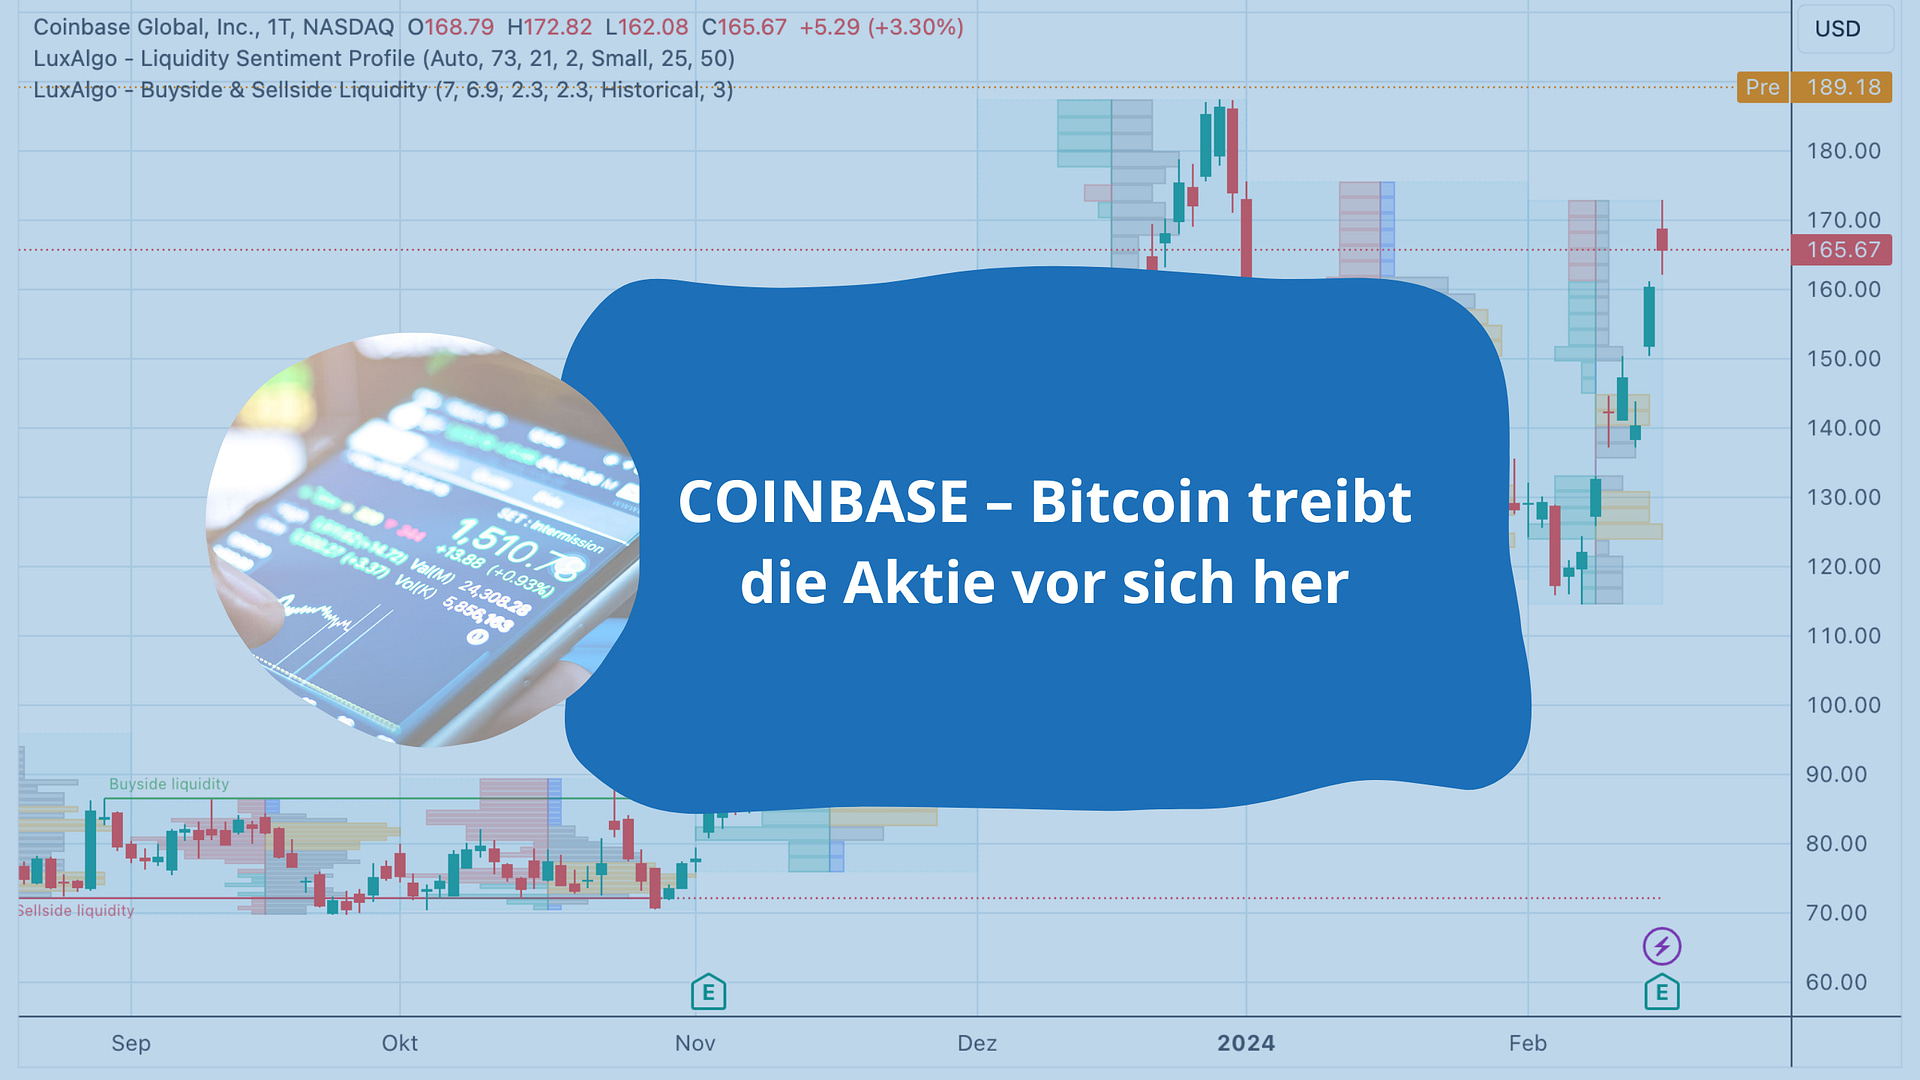 COINBASE – Bitcoin treibt die Aktie vor sich her